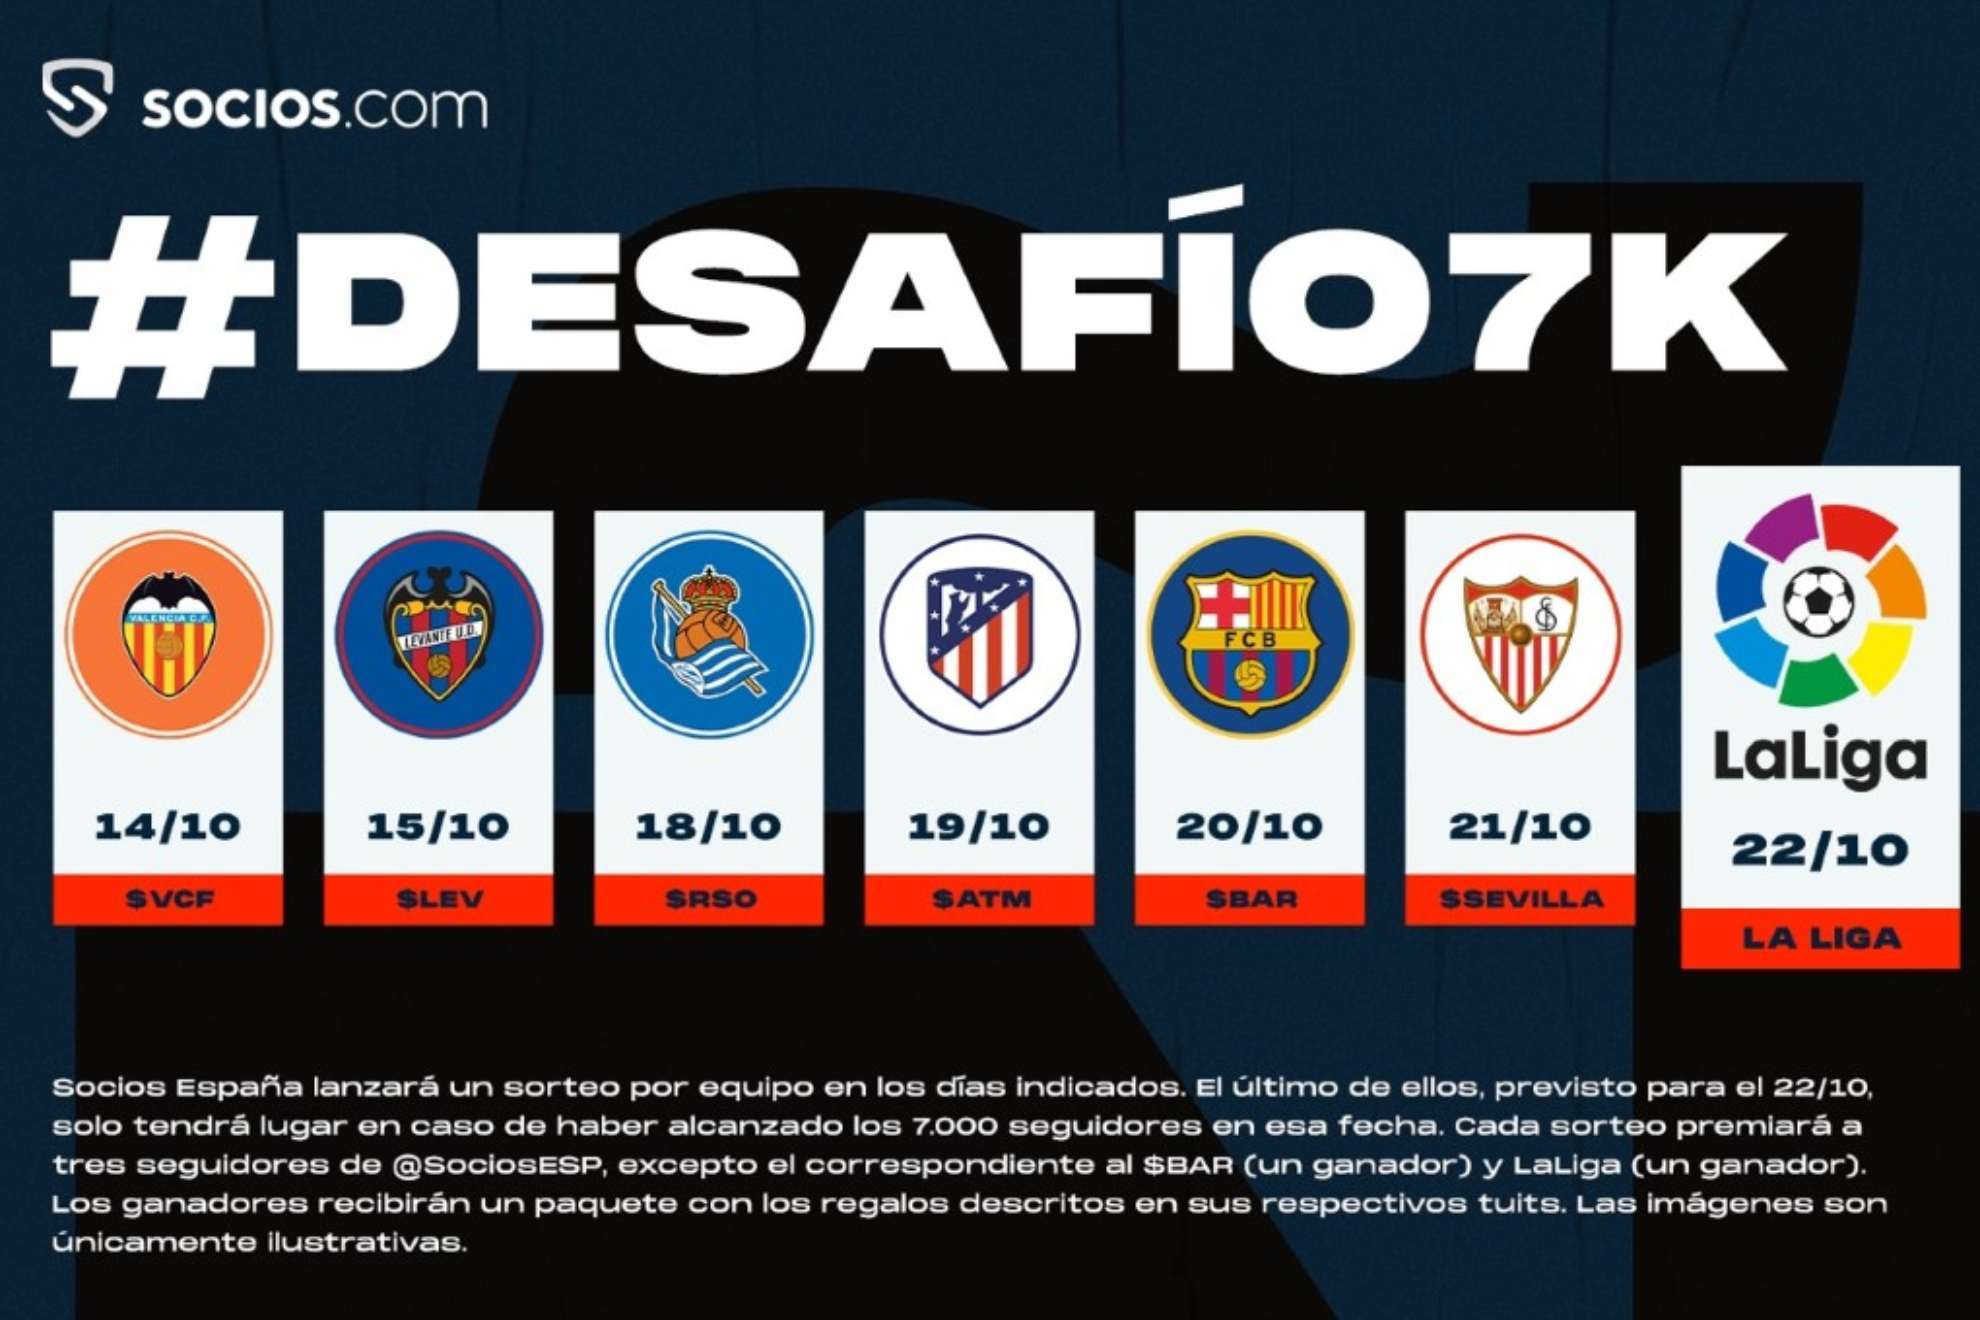 Socios.com lanza el #Desafío7k con premios VIP de sus clubes españoles